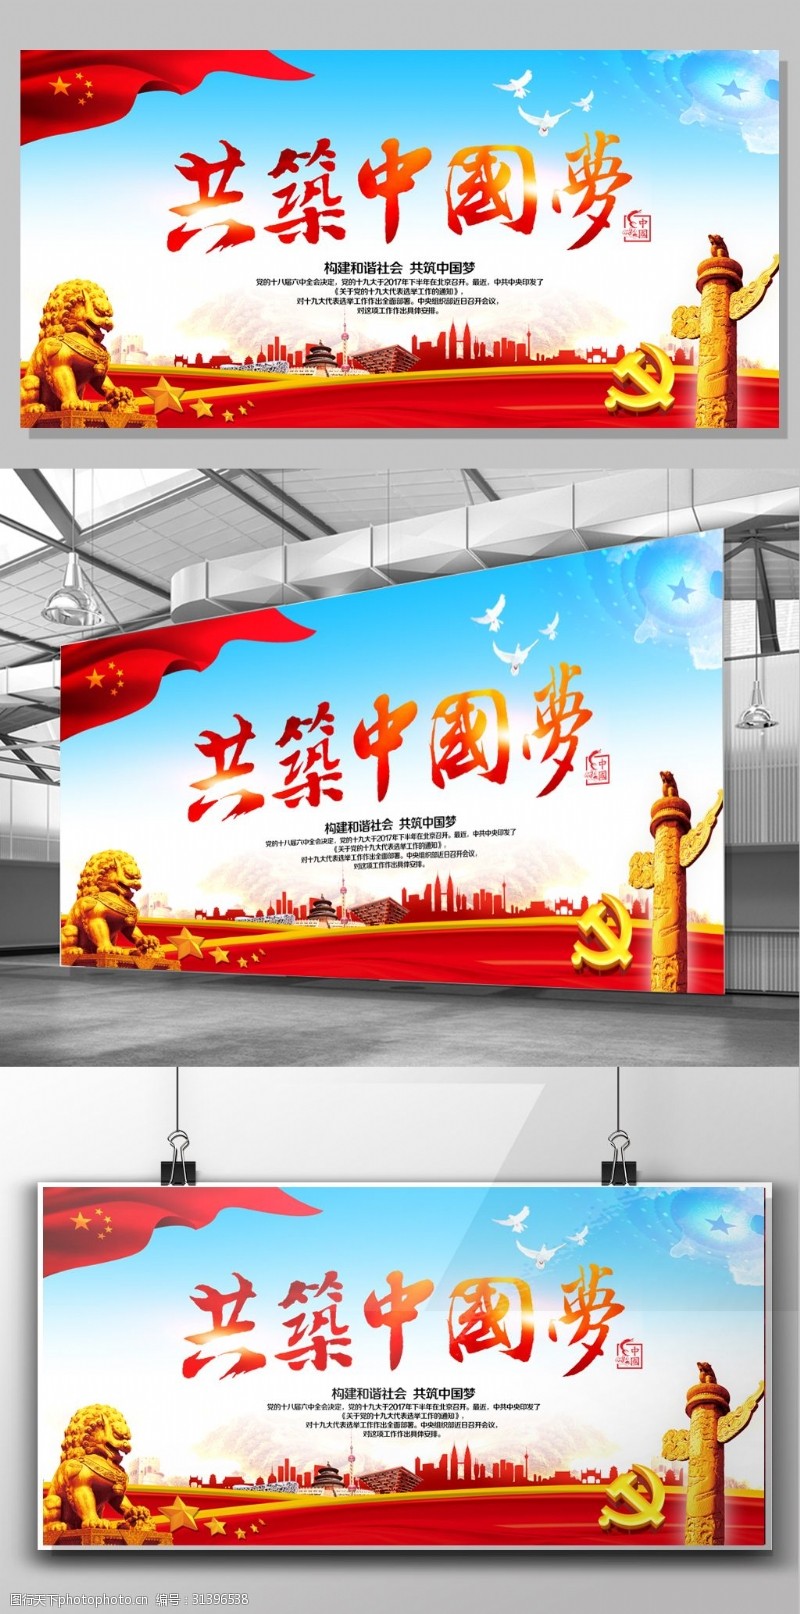 司法部共筑中国梦展板设计